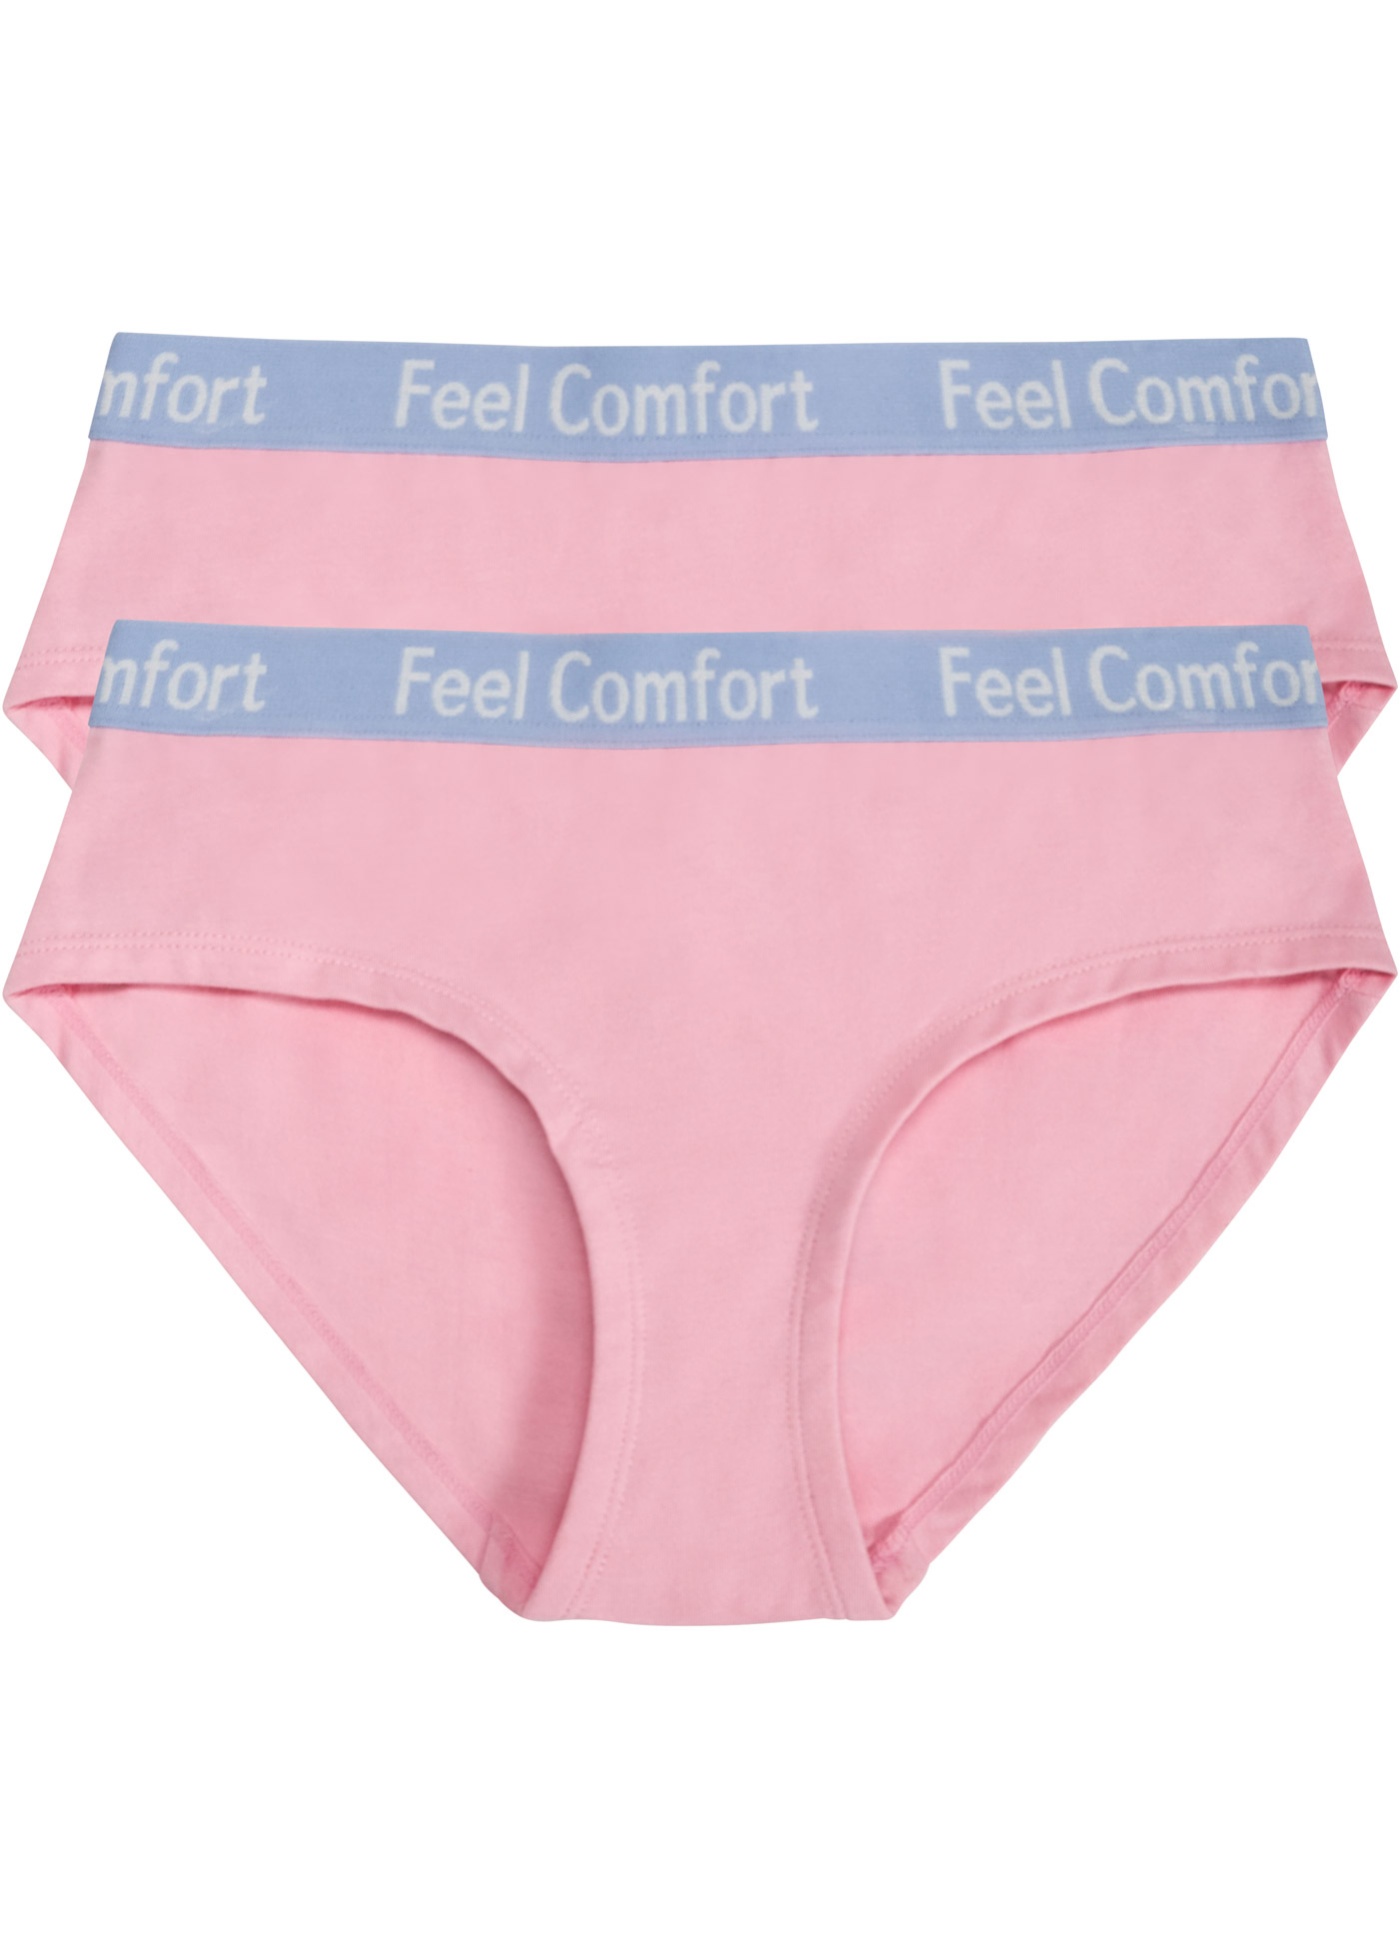 Feel Comfort Hipster (2er Pack)